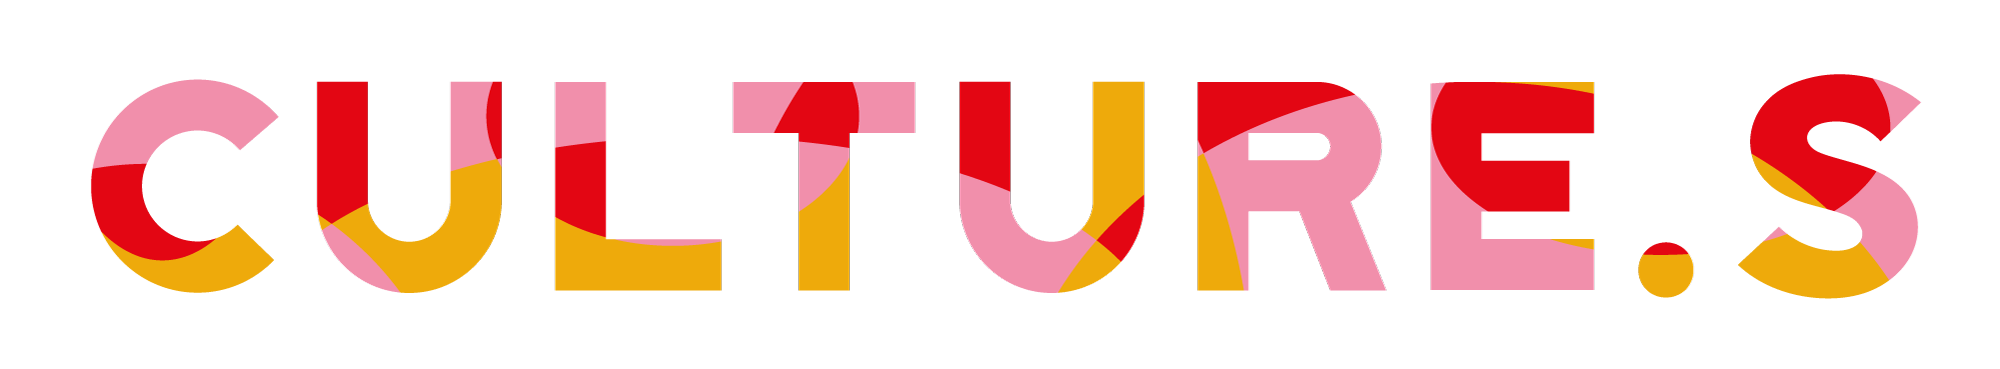 logo de l'exposition culture.s